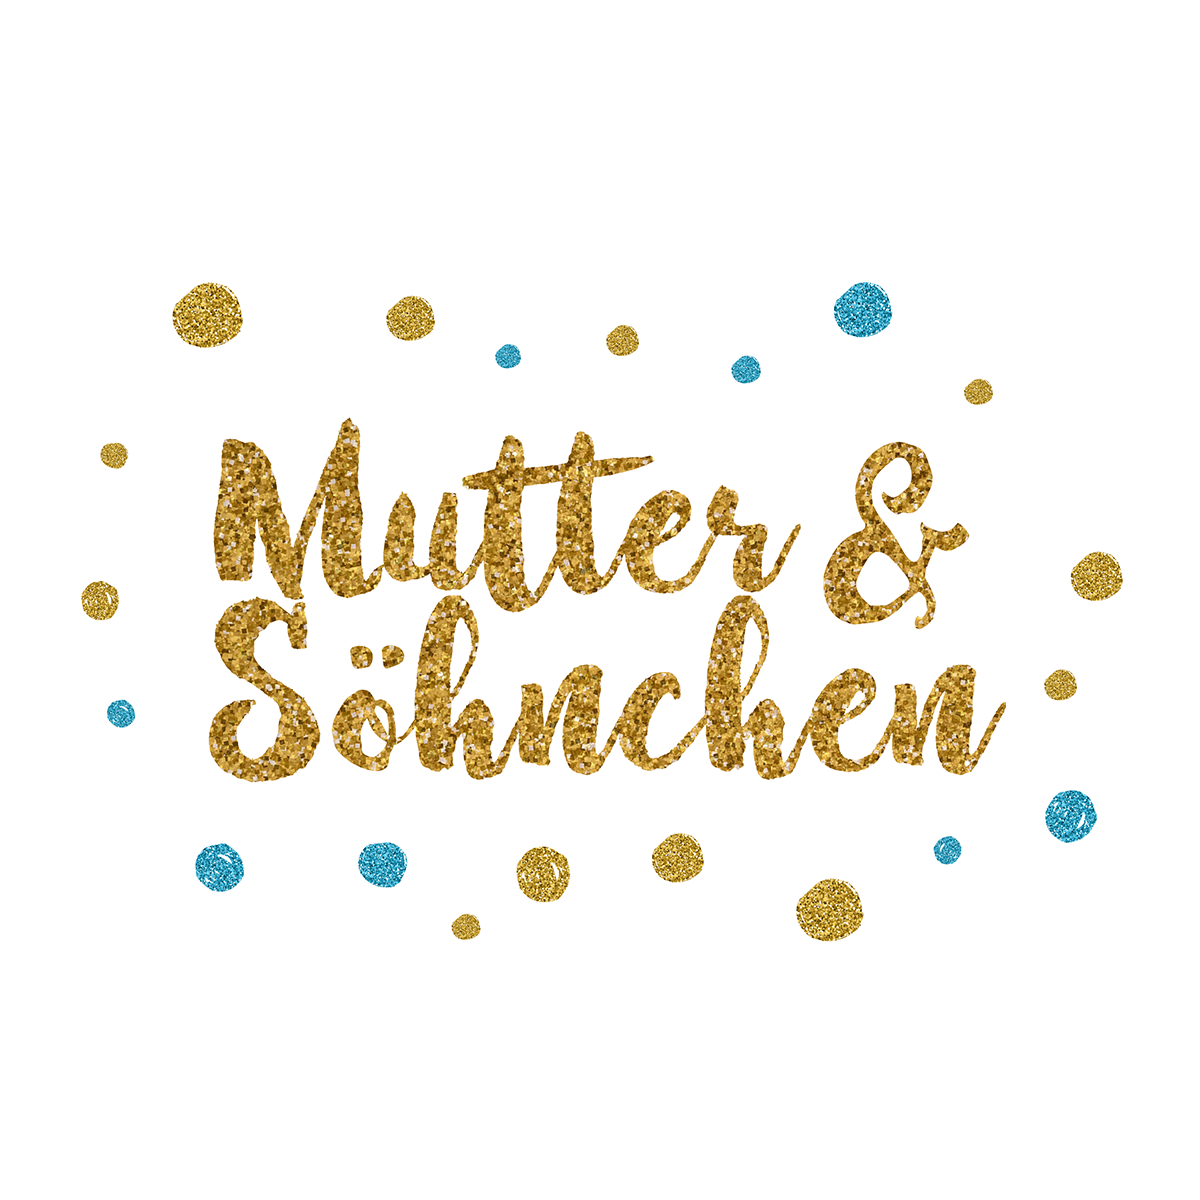 (c) Mutterundsoehnchen.com